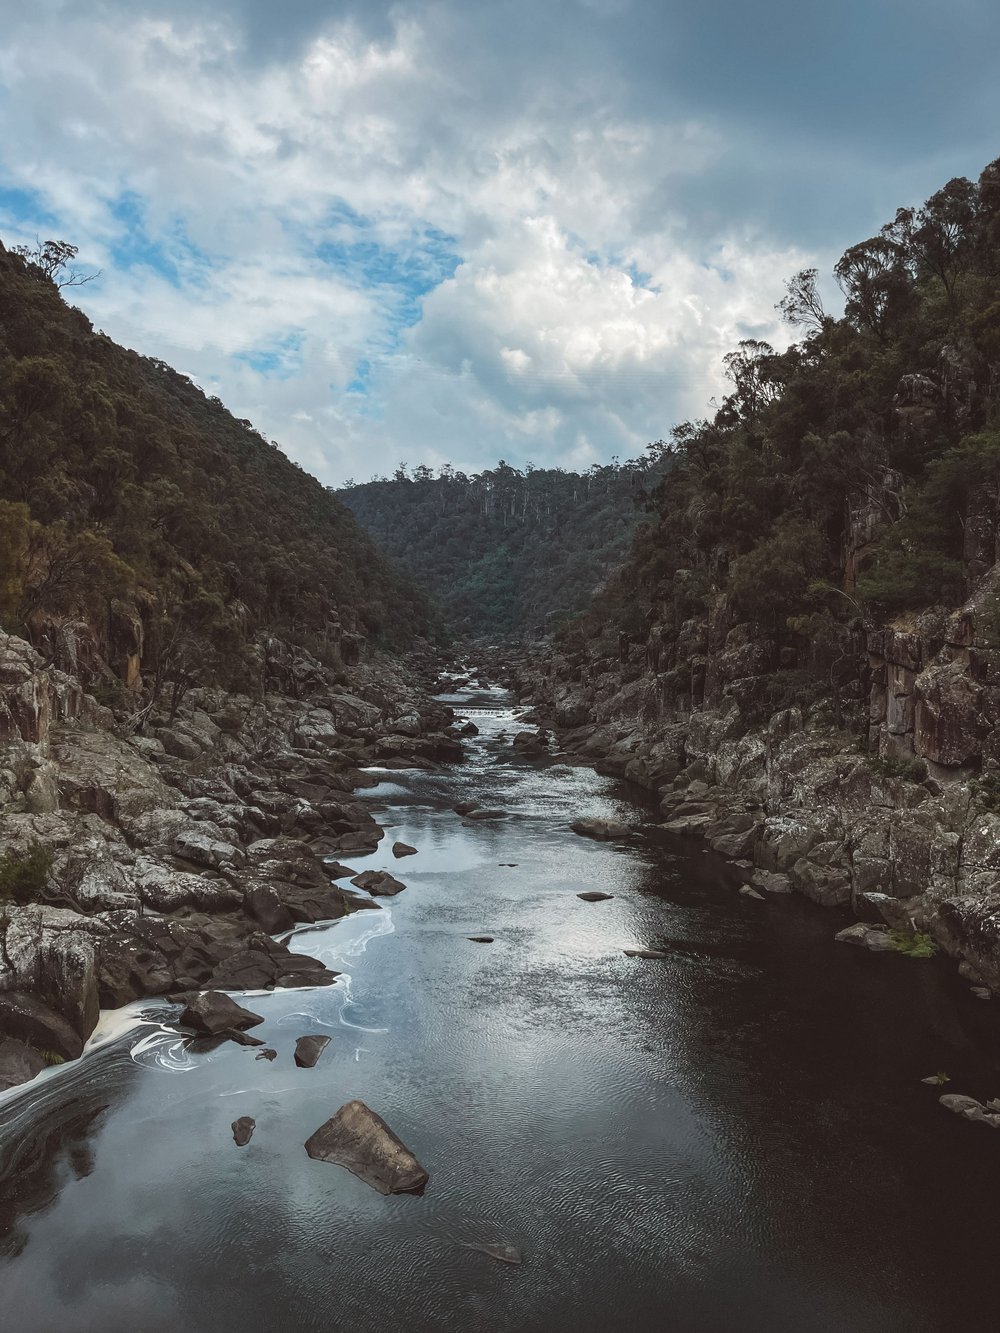 The gorge - Cataract Gorge - Launceston - Tasmania - Australia